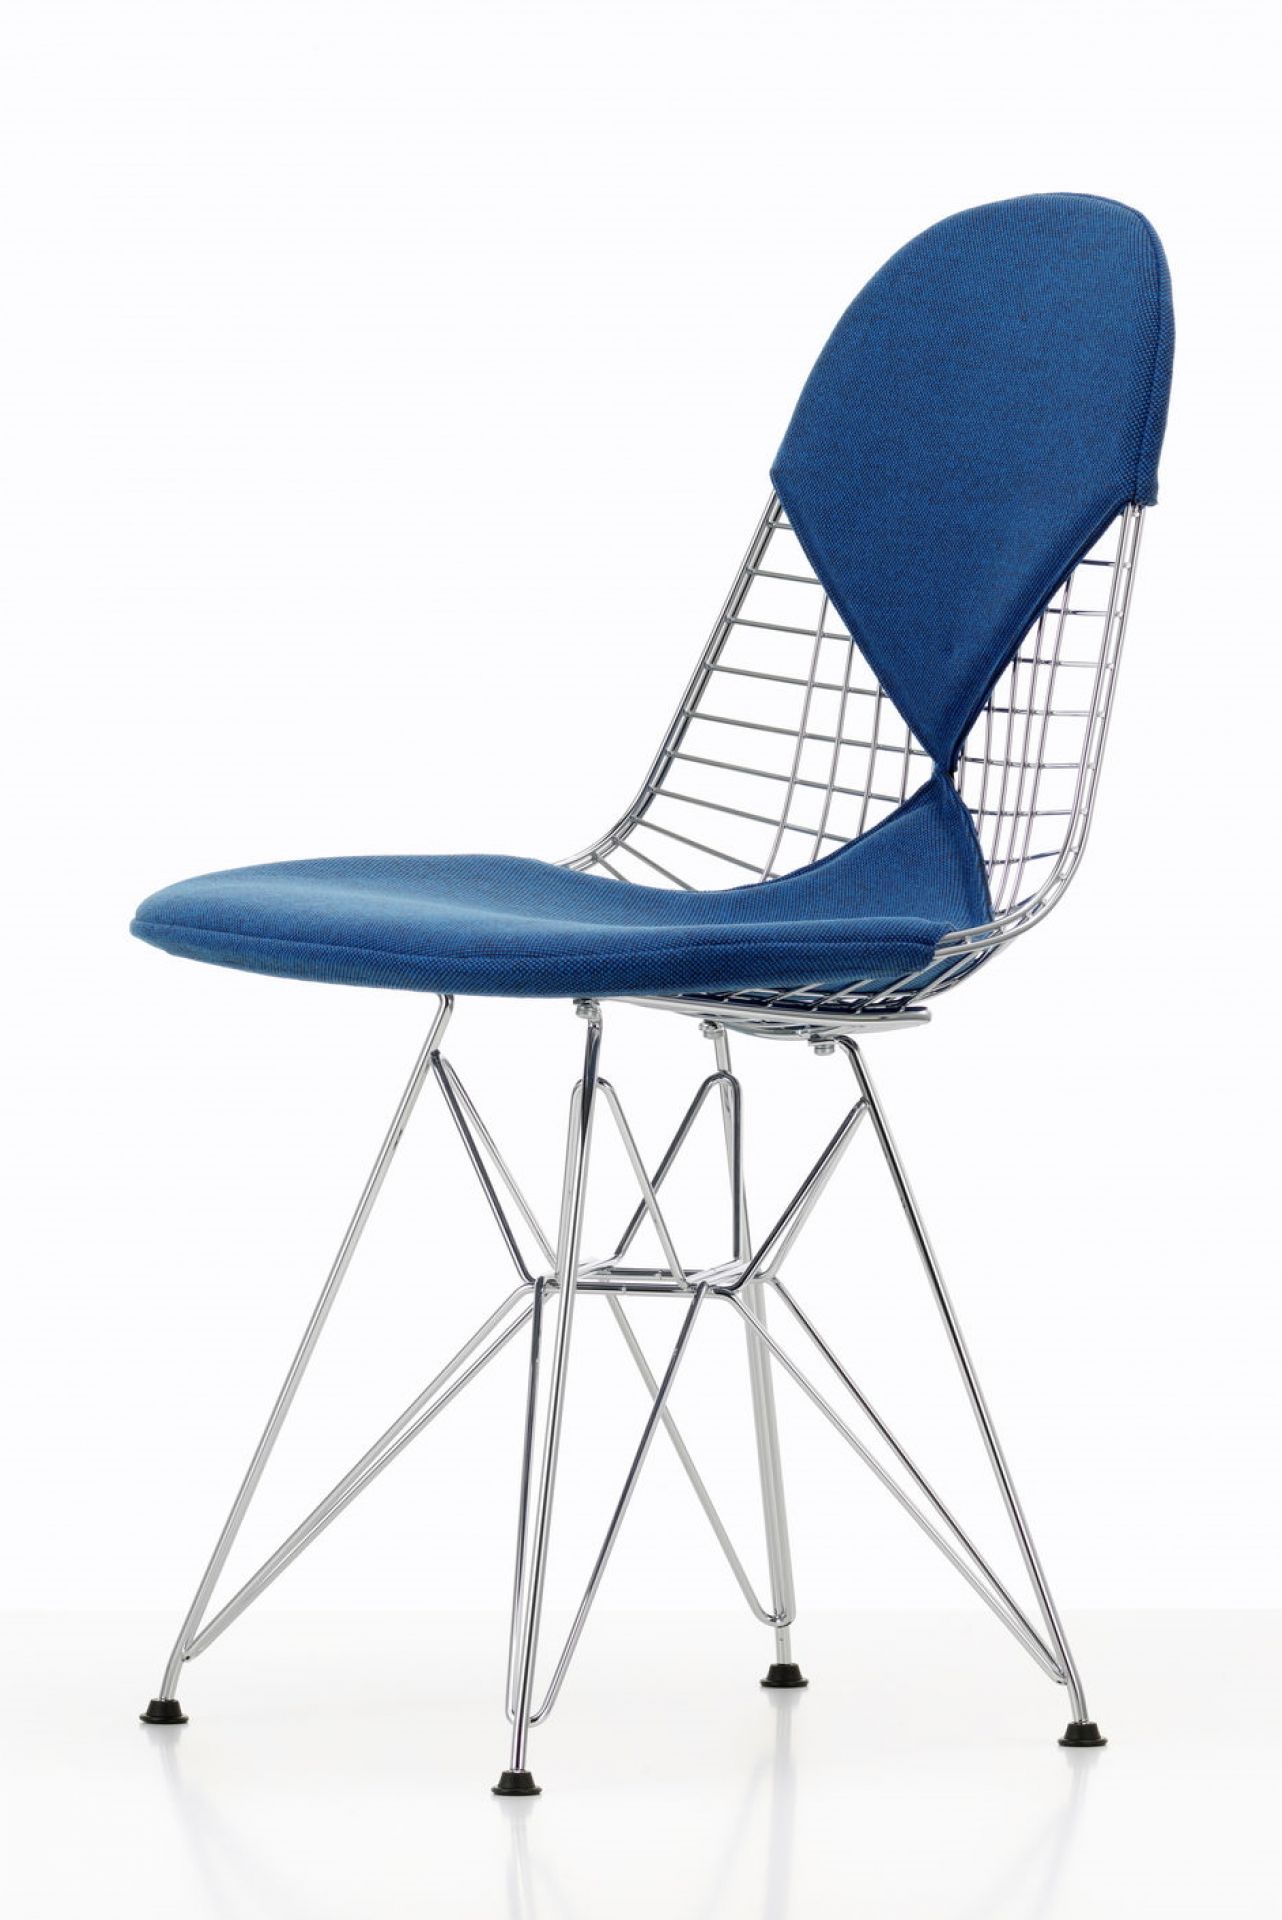 DKR-2 Wire Chair Stuhl mit Sitz und Rückenpolster Vitra